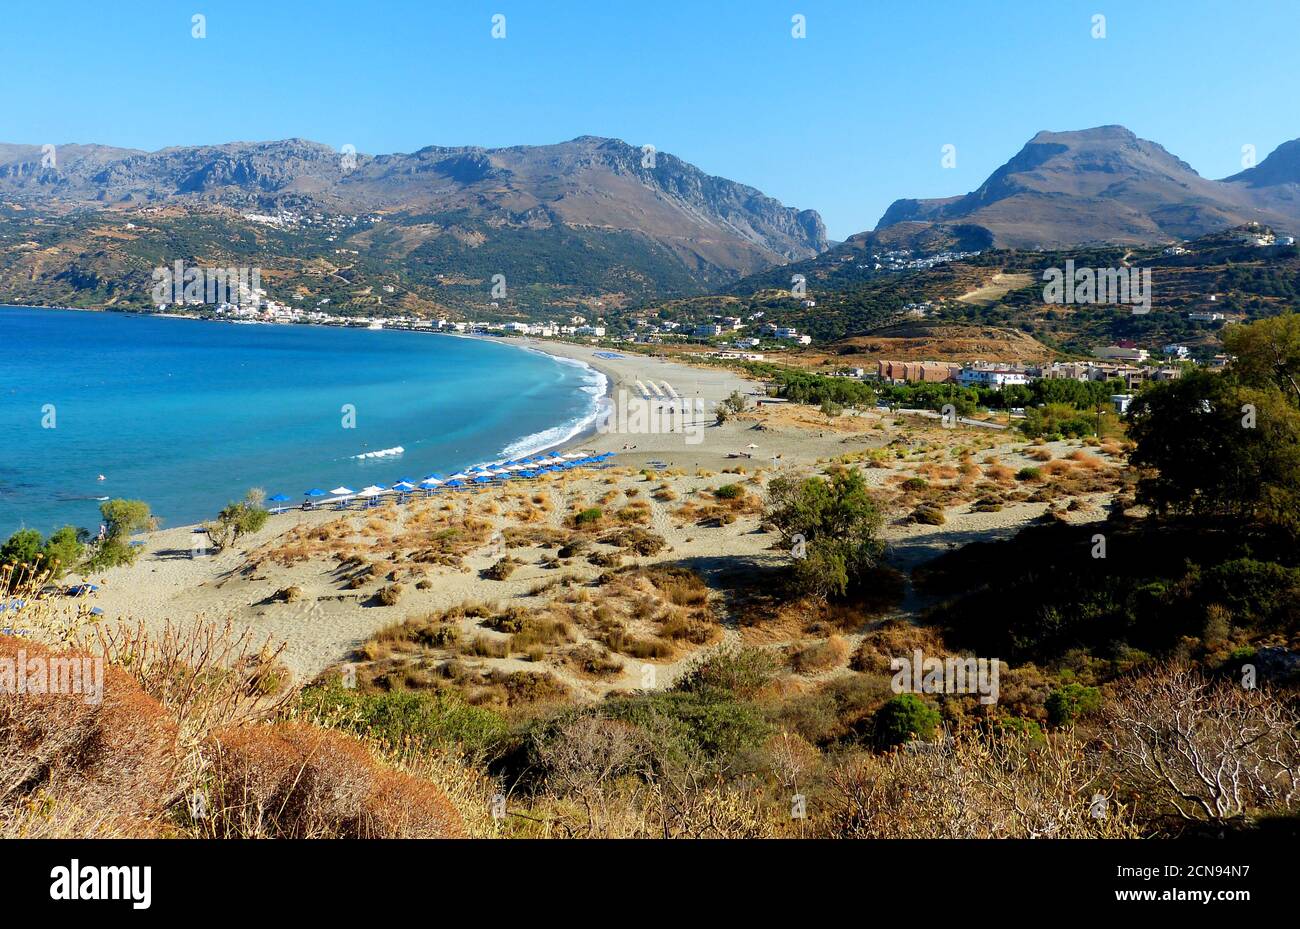 Isola di Creta, Grecia. Il Village Plakias è circondato da montagne e dal Mar Libico, parte del Mediterraneo. Qui 1300 metri di spiaggia sabbiosa. Foto Stock